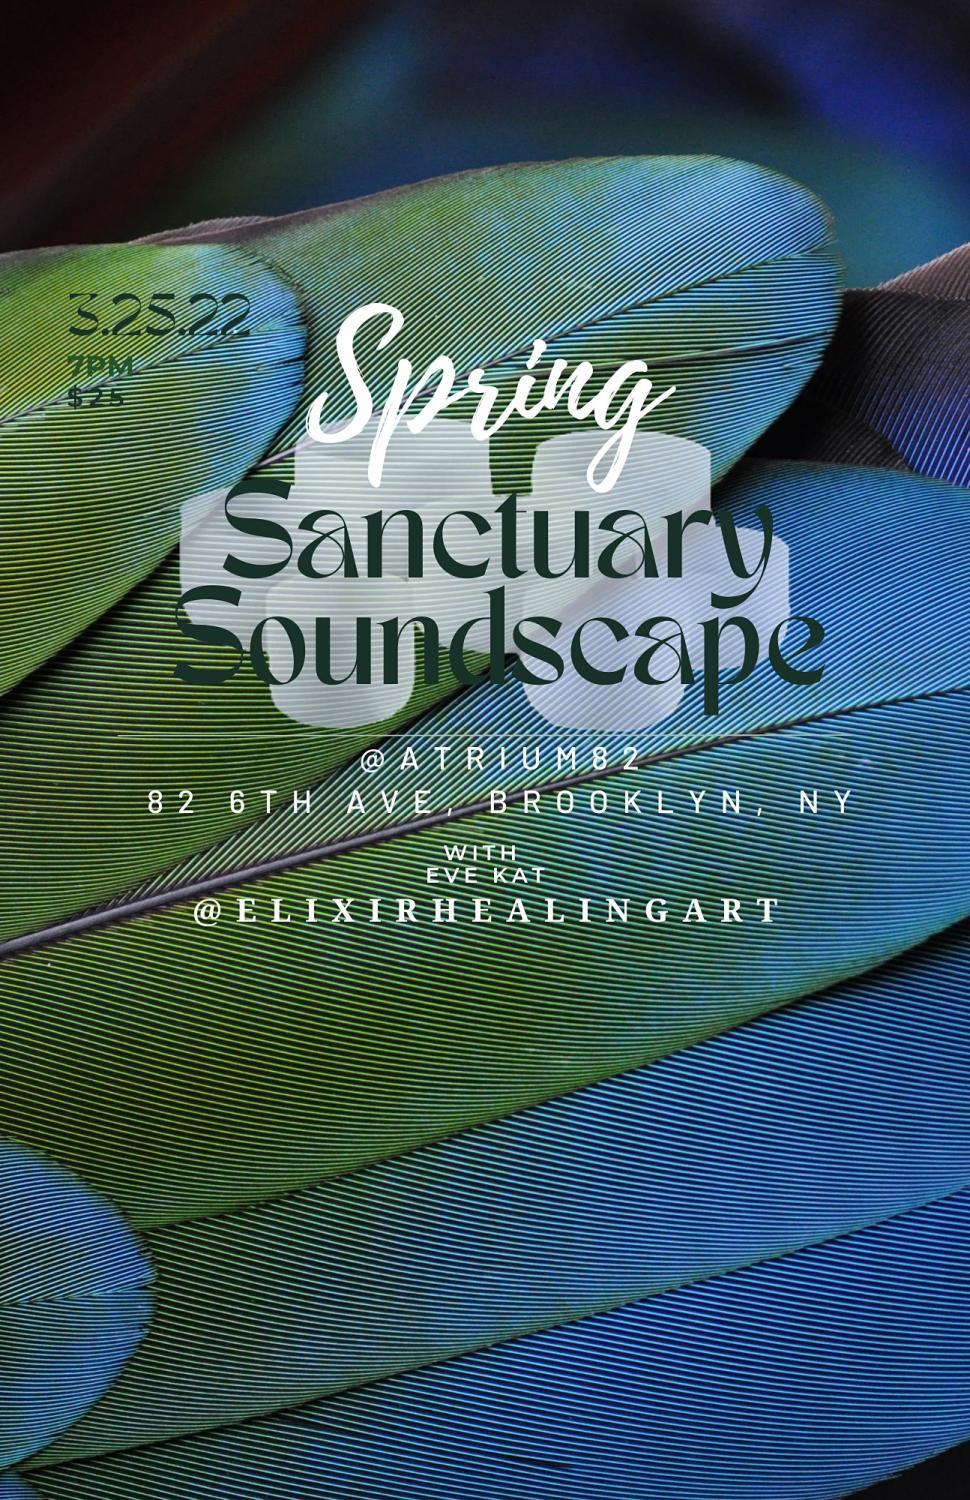 SPRING Sanctuary Soundscape